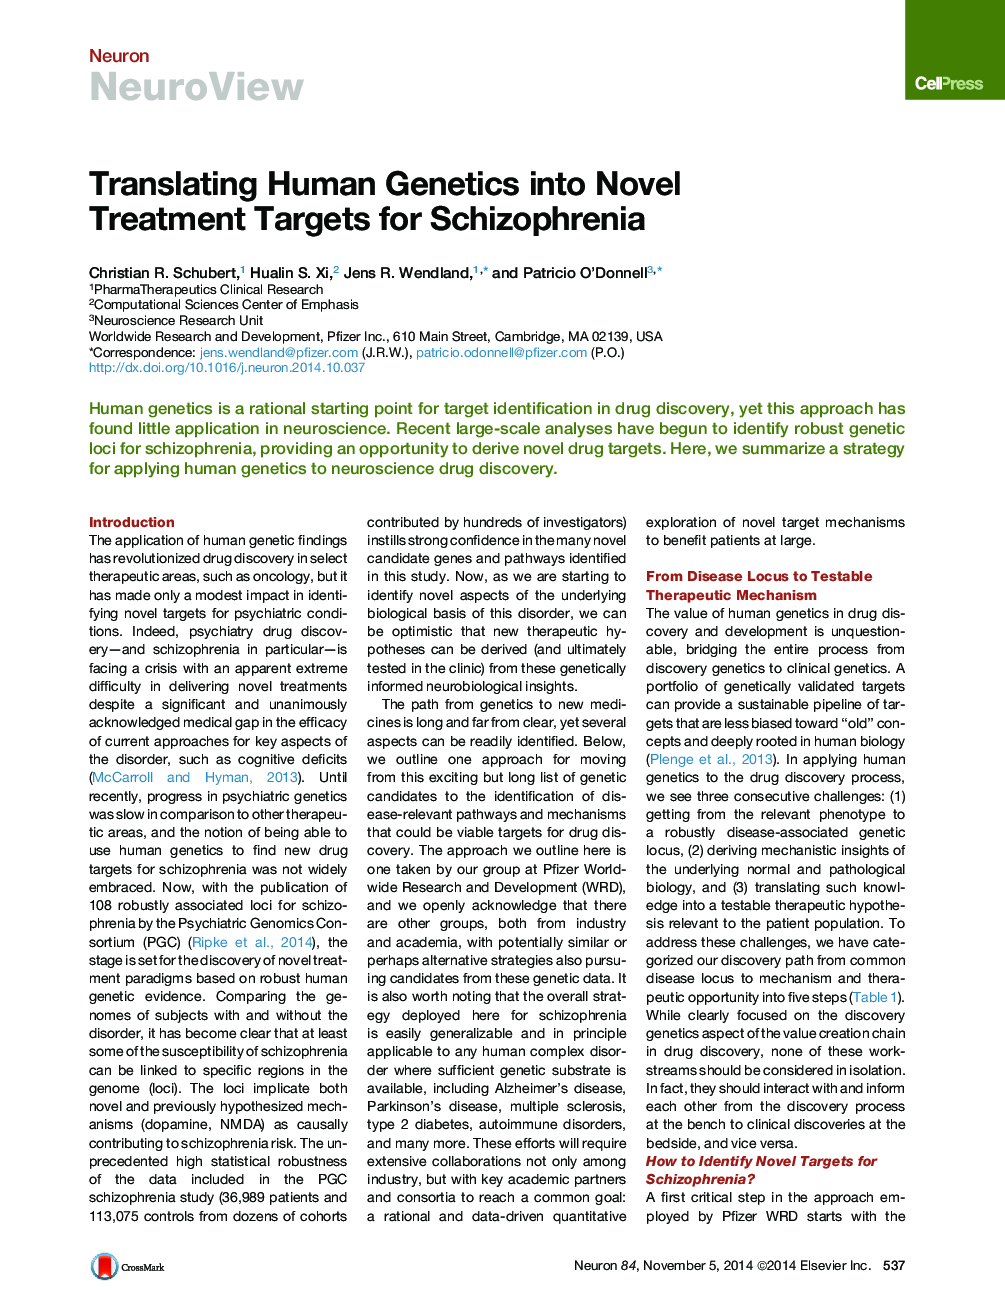 ترجمه ژنتیک انسانی به اهداف درمان نوین برای اسکیزوفرنیا 